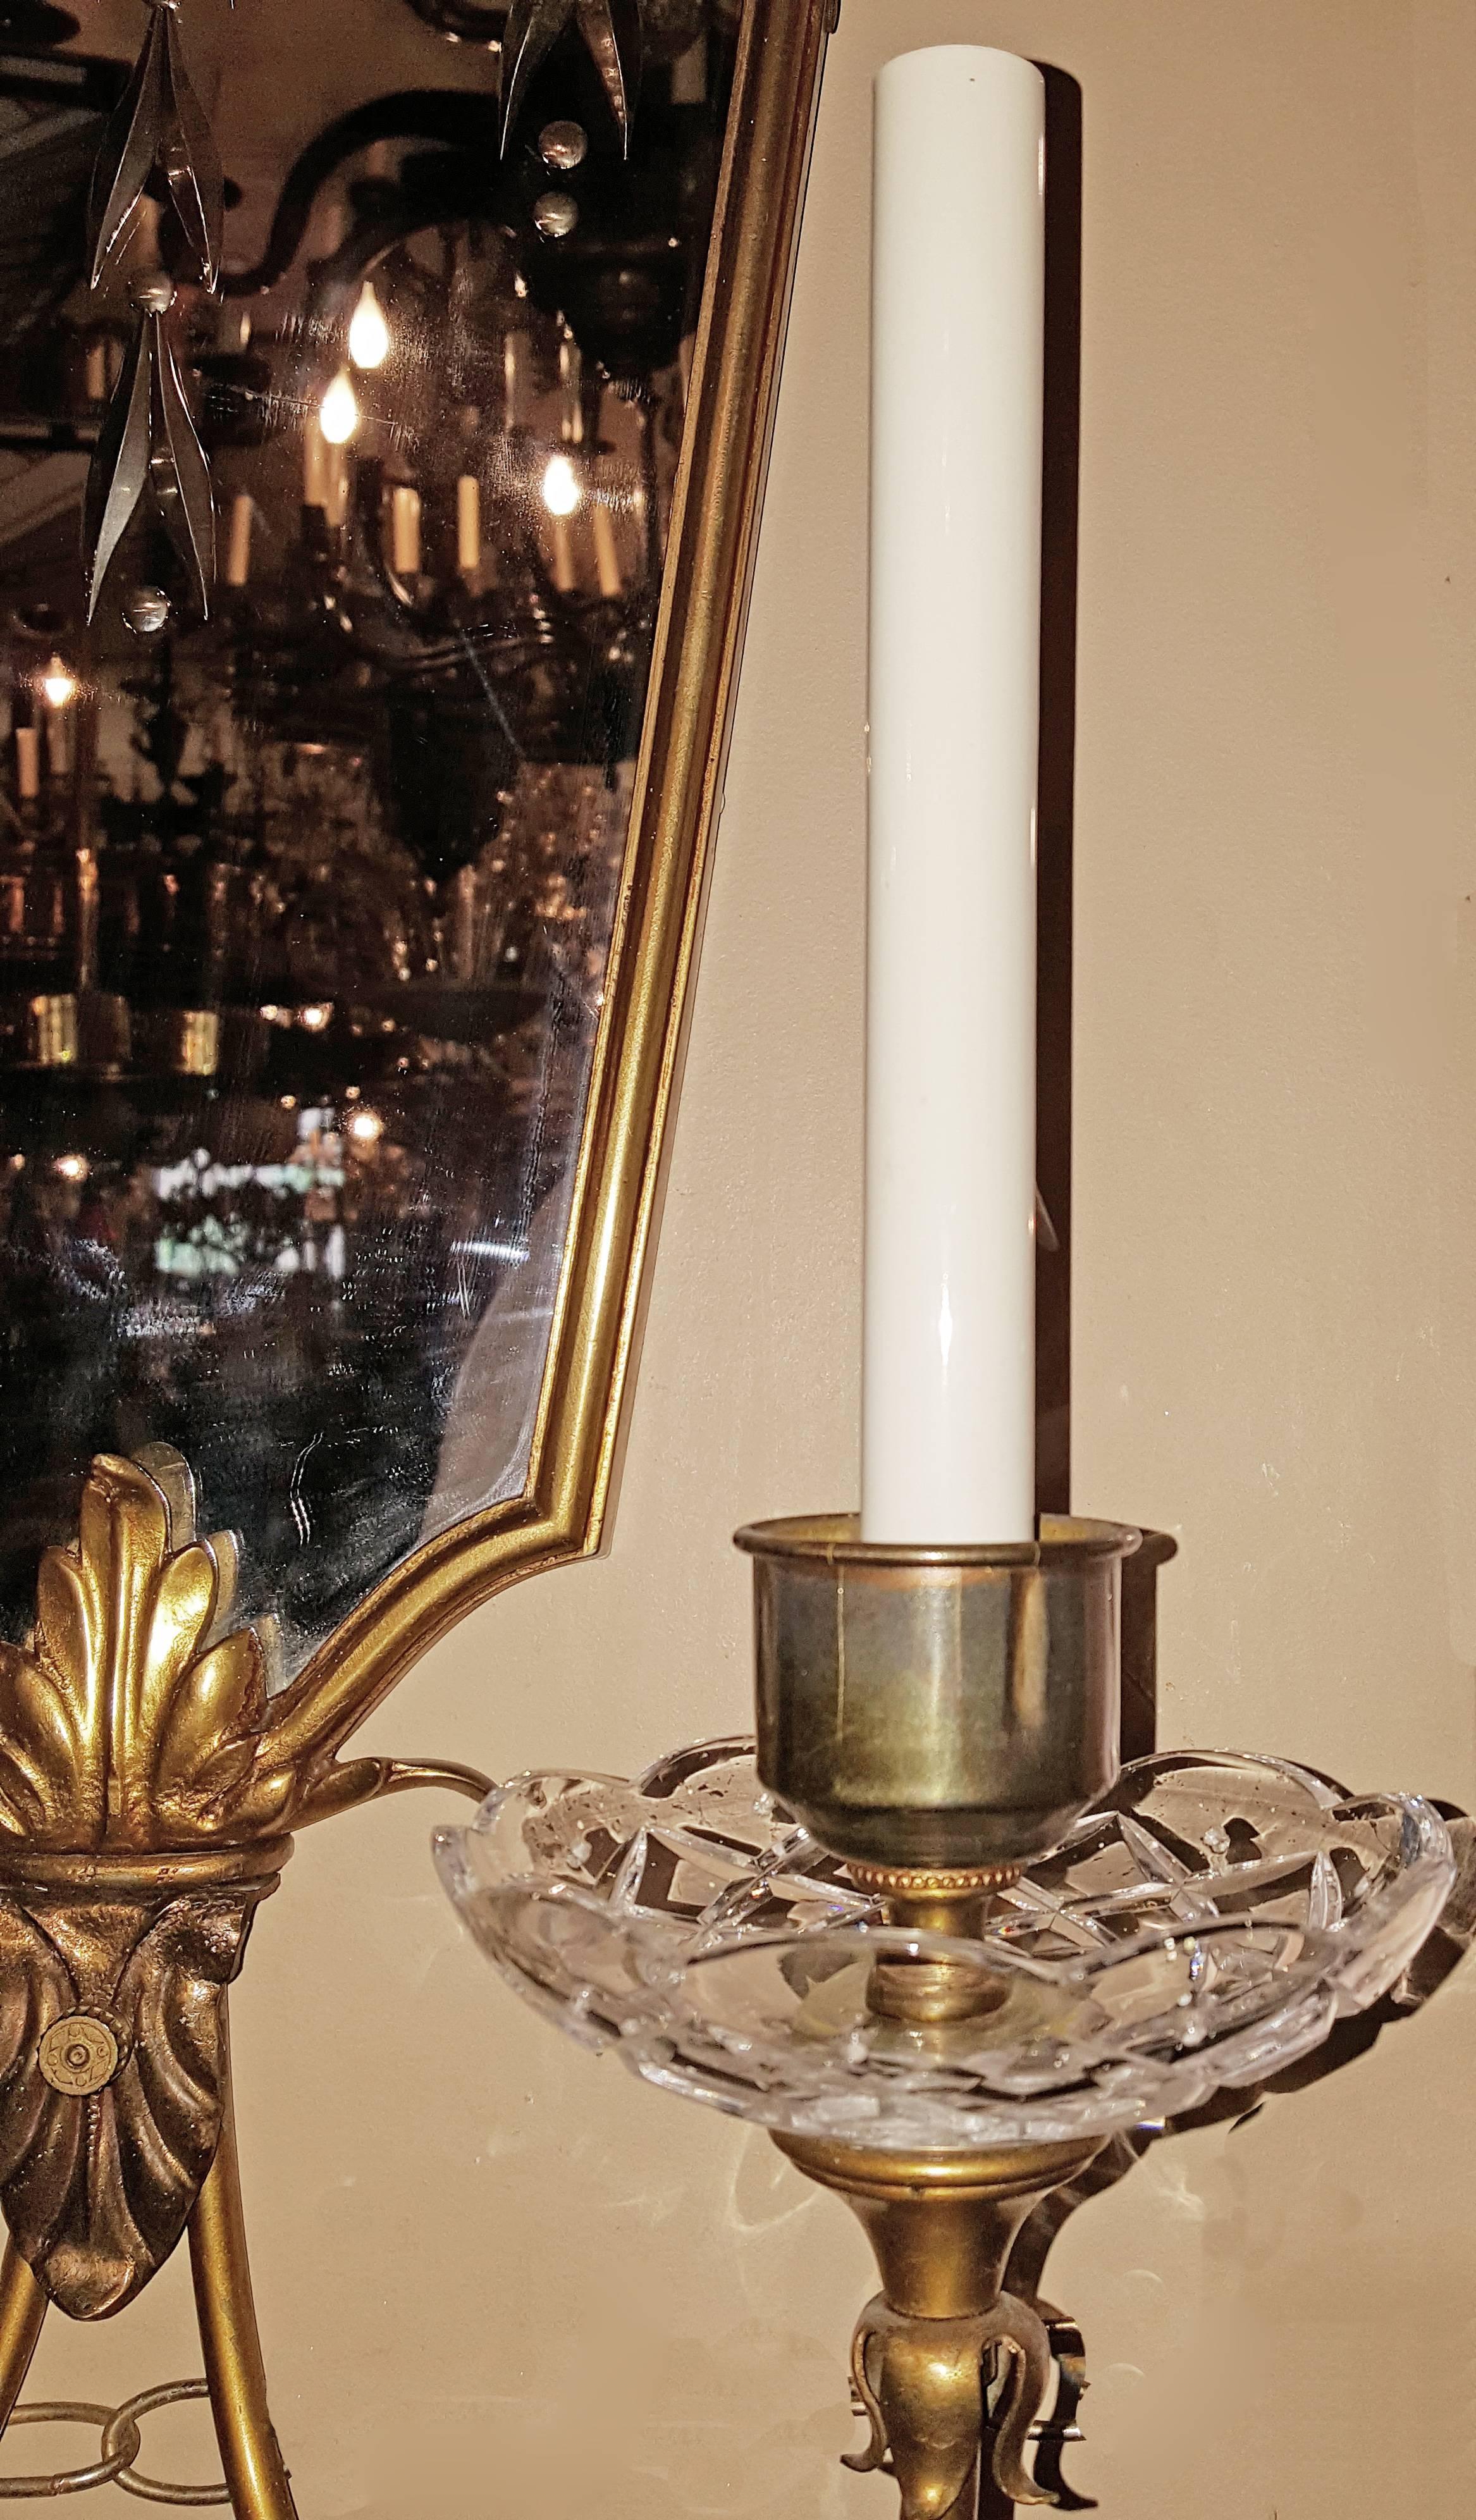 Paire de grandes appliques françaises à dos de miroir des années 1940, avec corps doré et motif de feuillage gravé.
Rewired for US.